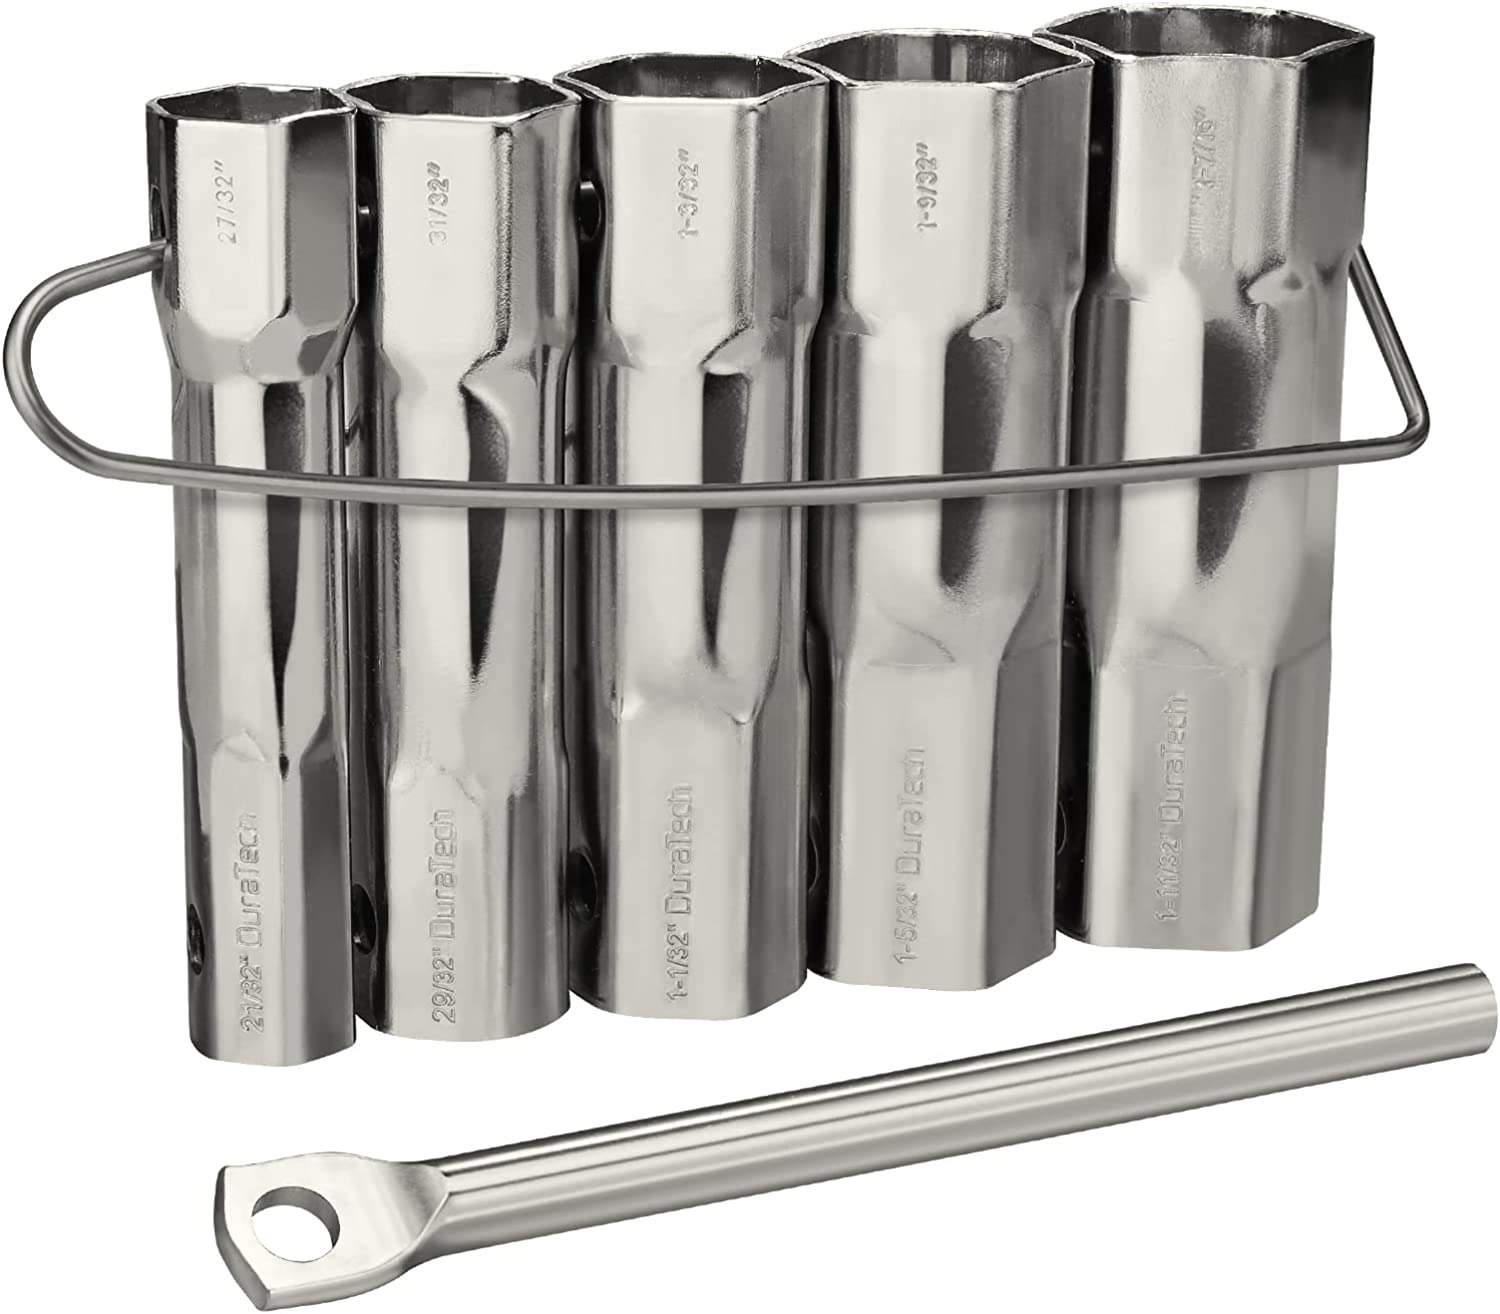 Shower Valve Socket Wrench Set with Bar Handle for Removing Tub & Shower Valve，5